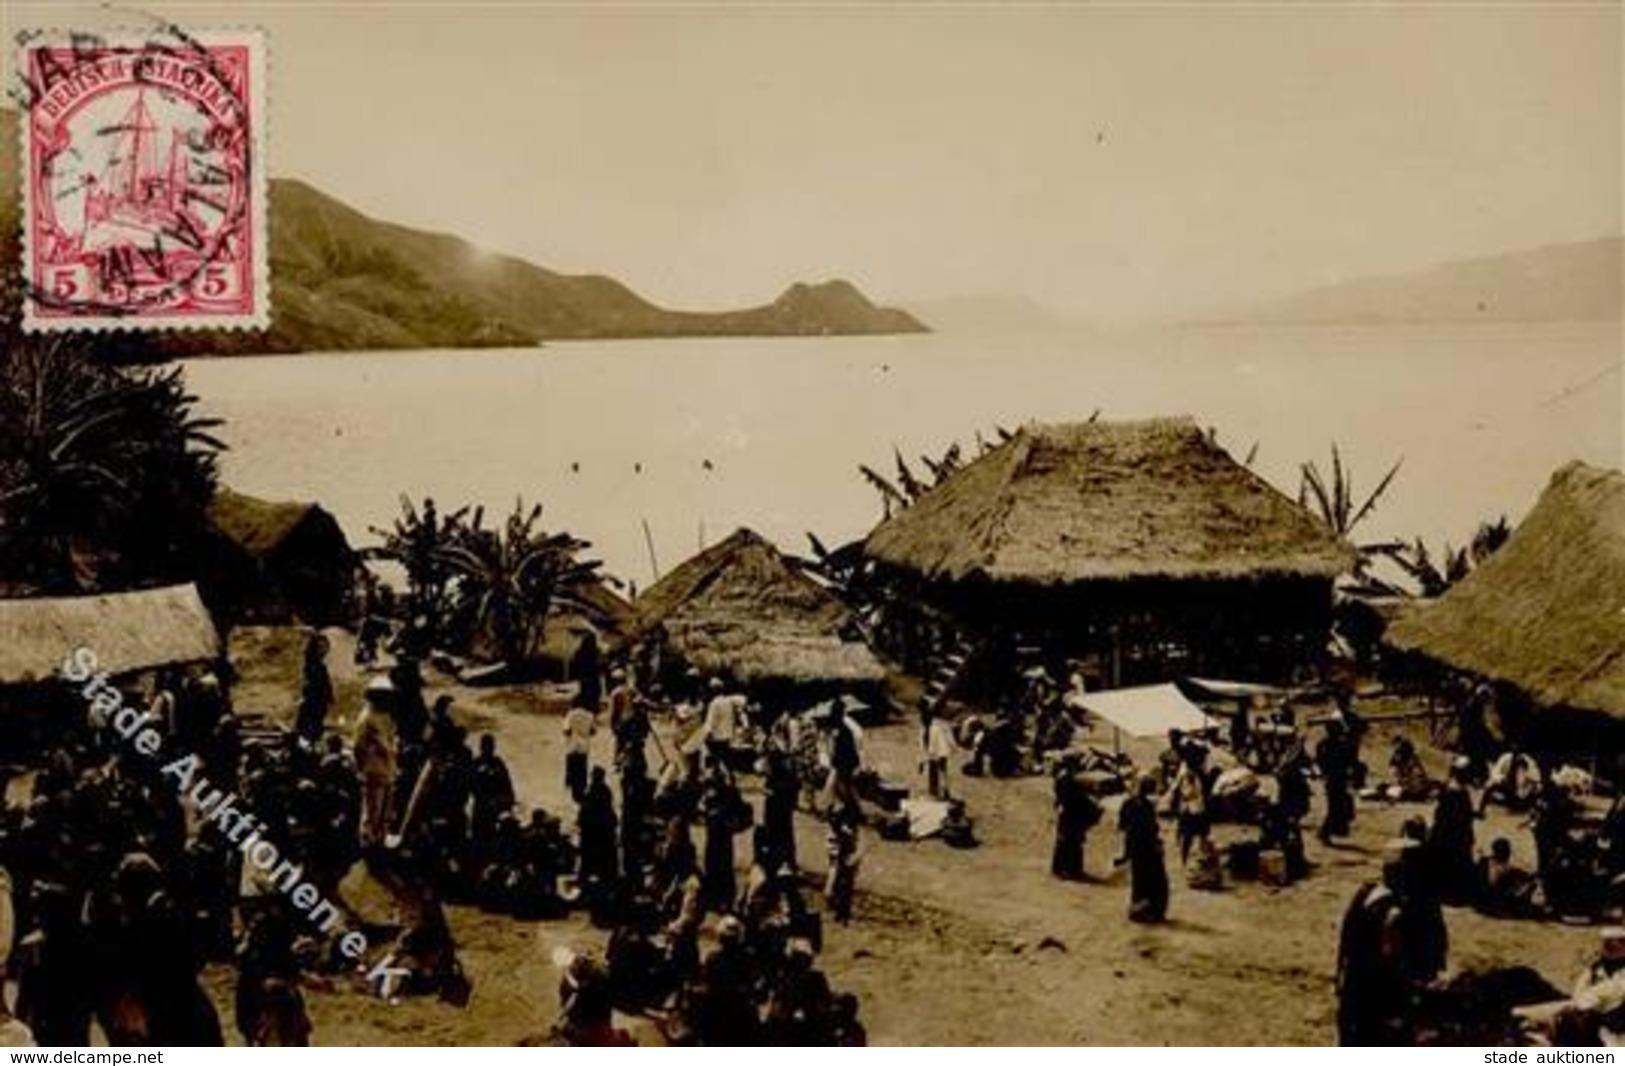 Kolonien Deutsch Ostafrika Dar Es Salaam Foto AK 1901 I-II Colonies - Africa